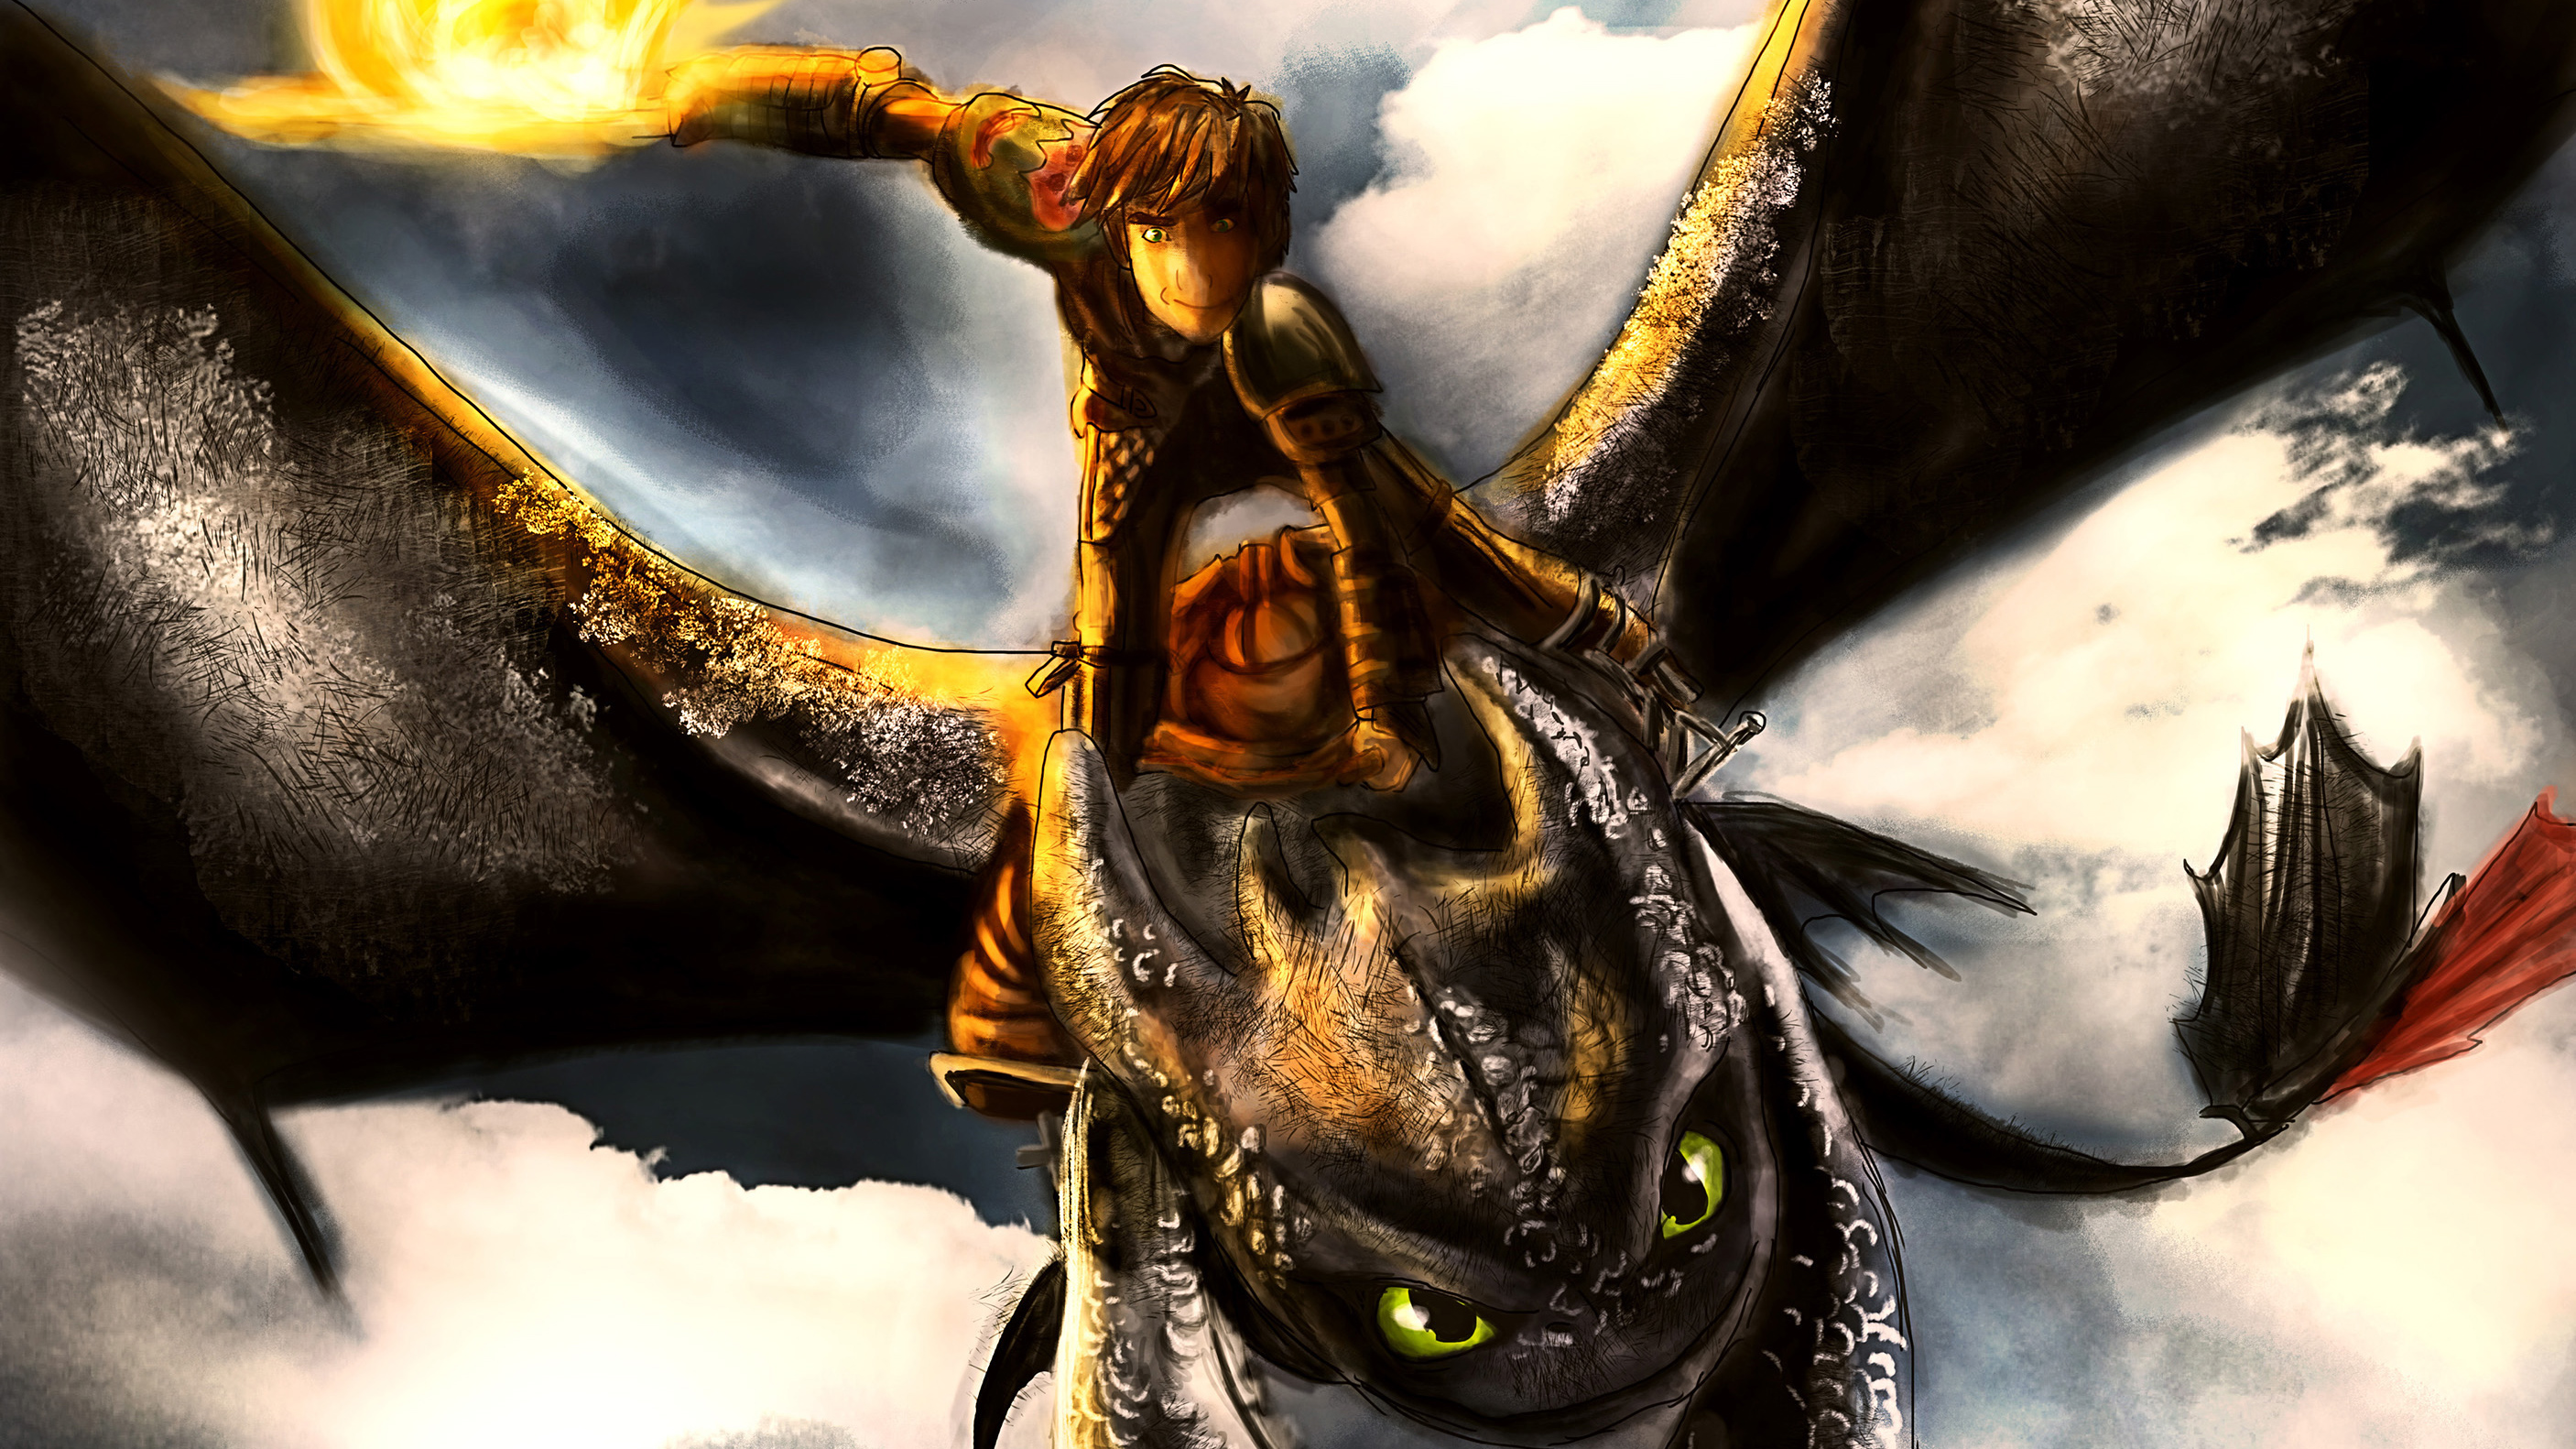 sfondi hd dragon 1366x768,cg artwork,drago,demone,personaggio fittizio,creatura mitica